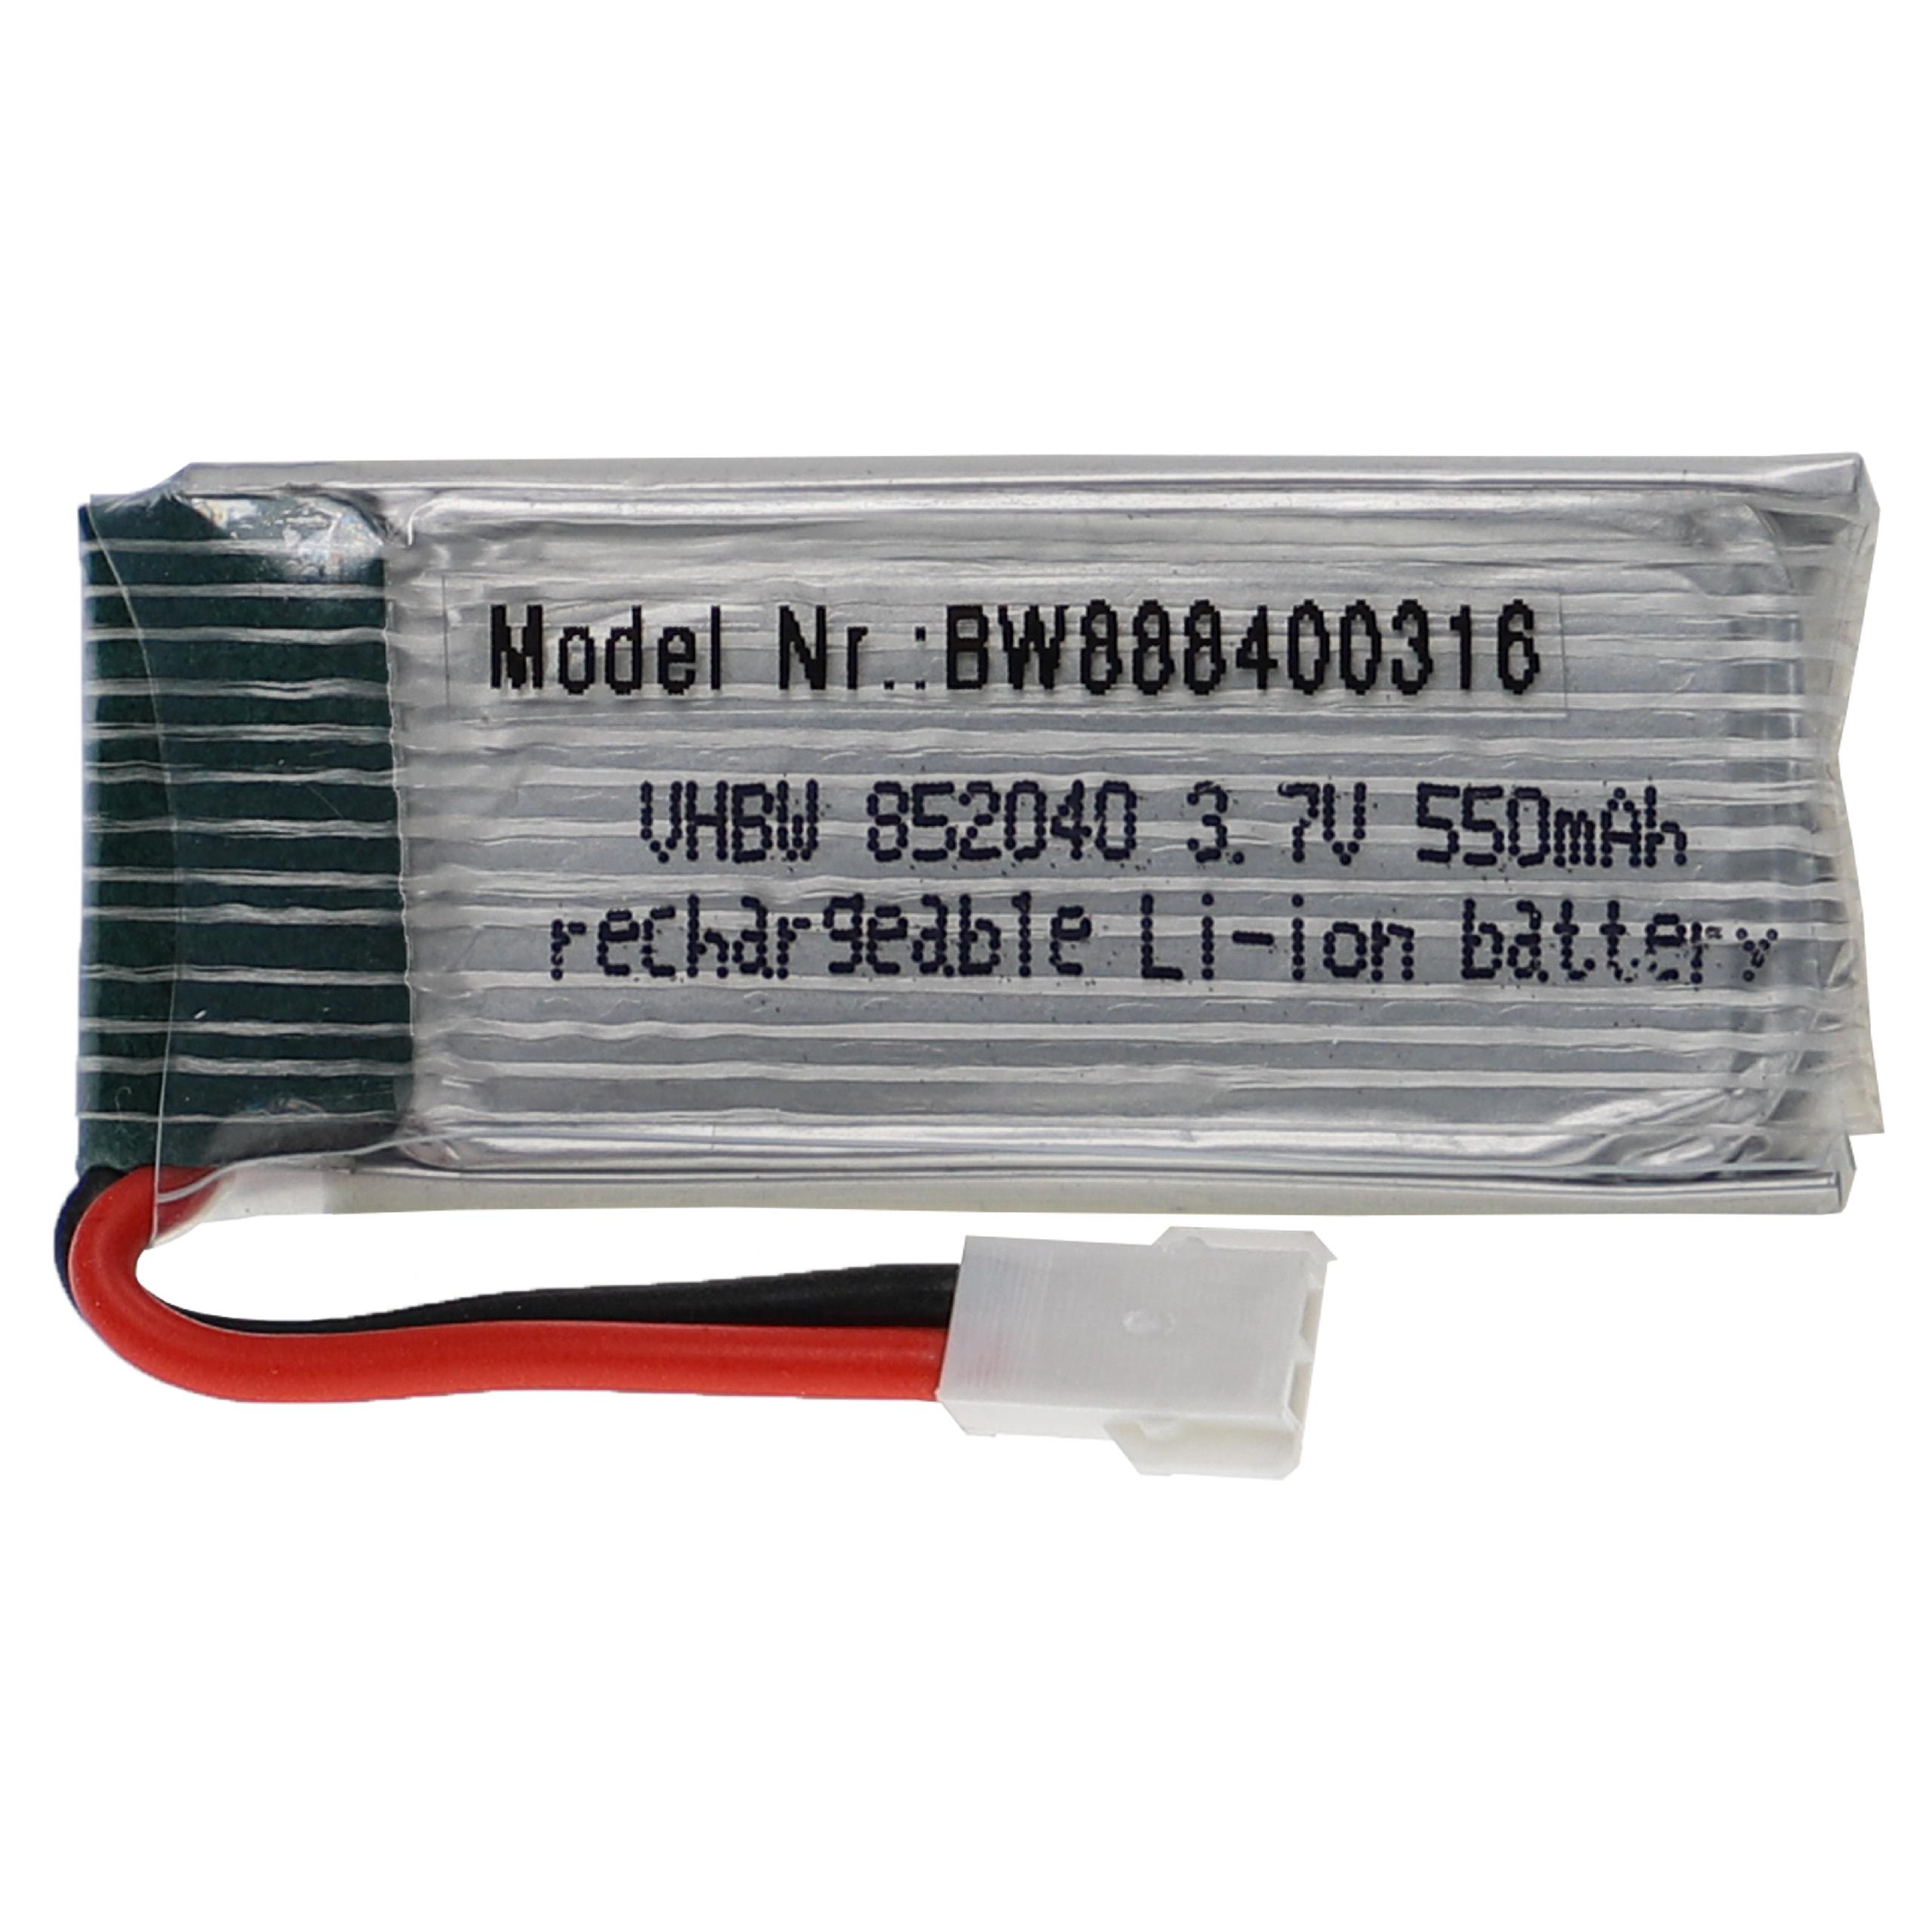 Batería para dispositivos modelismo - 550 mAh 3,7 V Li-poli, XH 2.54 2P